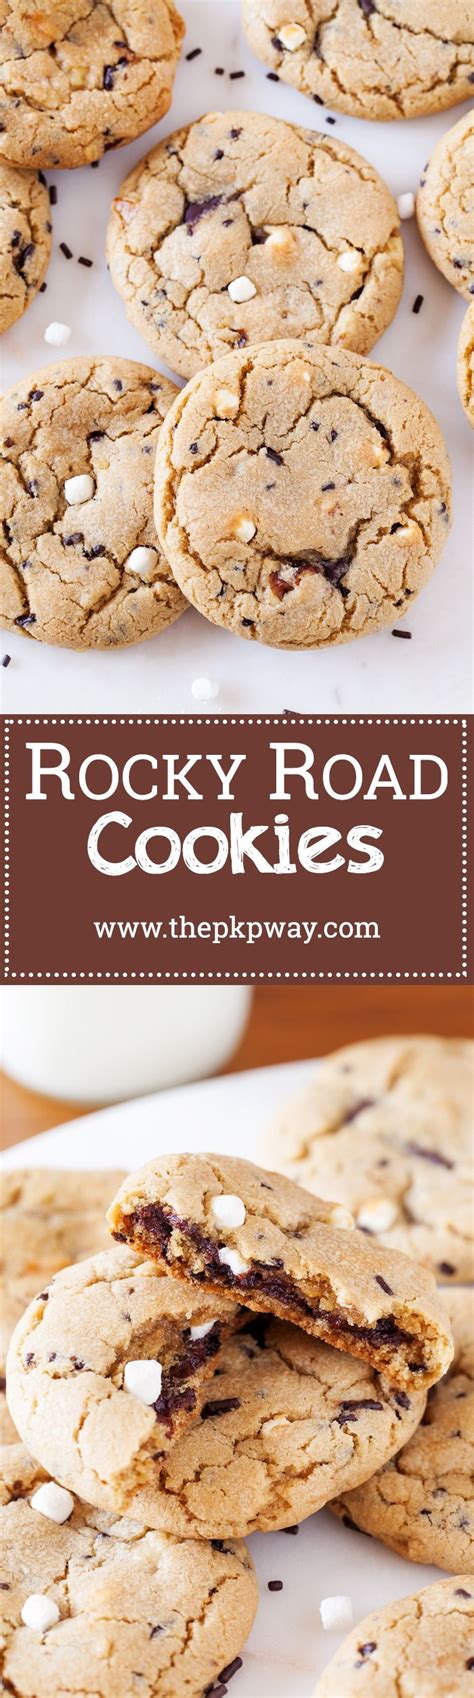 Rocky Road Cookies The Pkp Way Breakfast Recipes Sweet Cookie